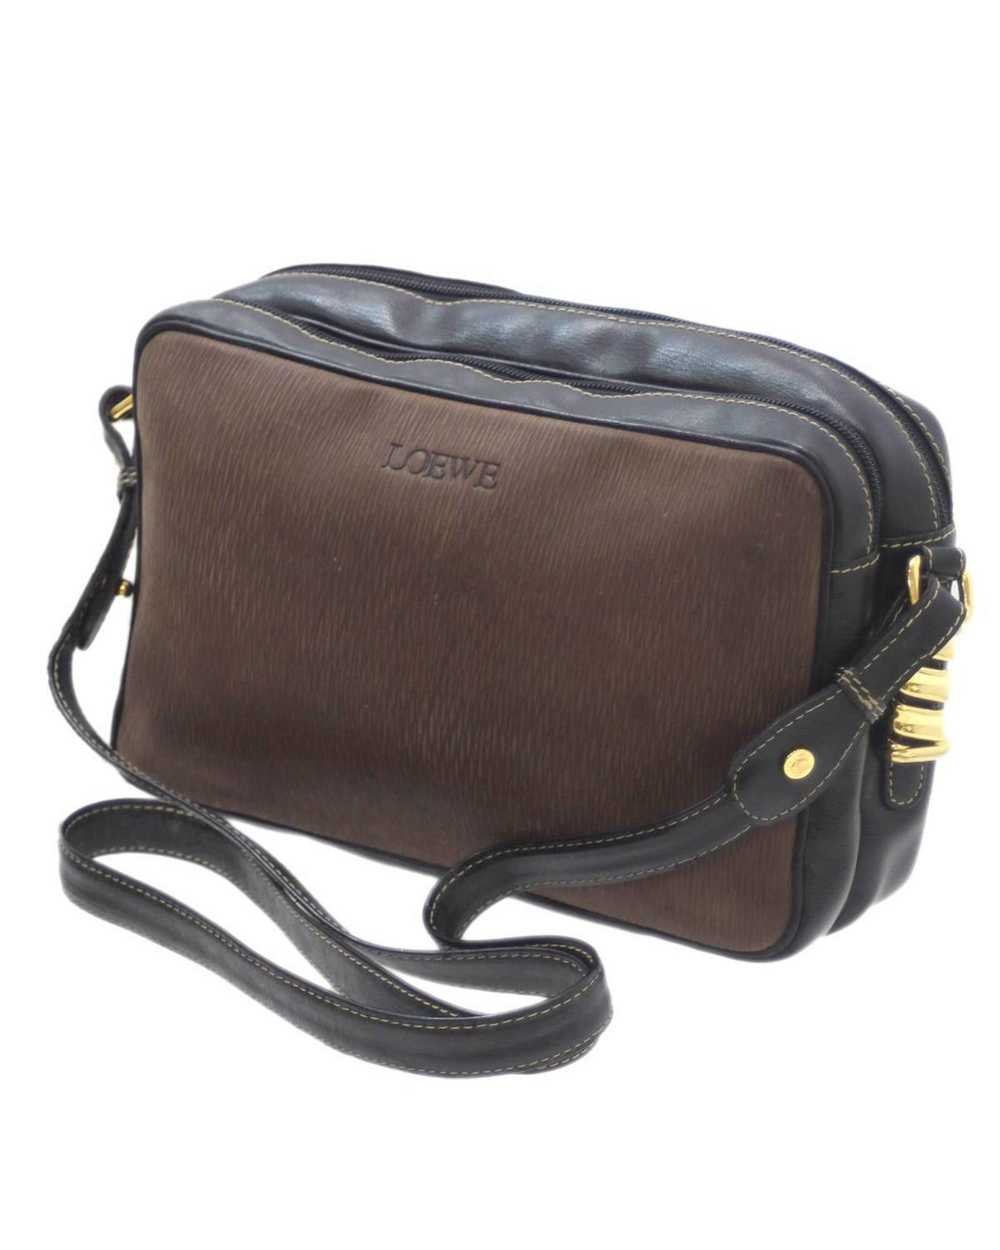 Loewe Brown Leather Loewe Bag - Practical and Ele… - image 1